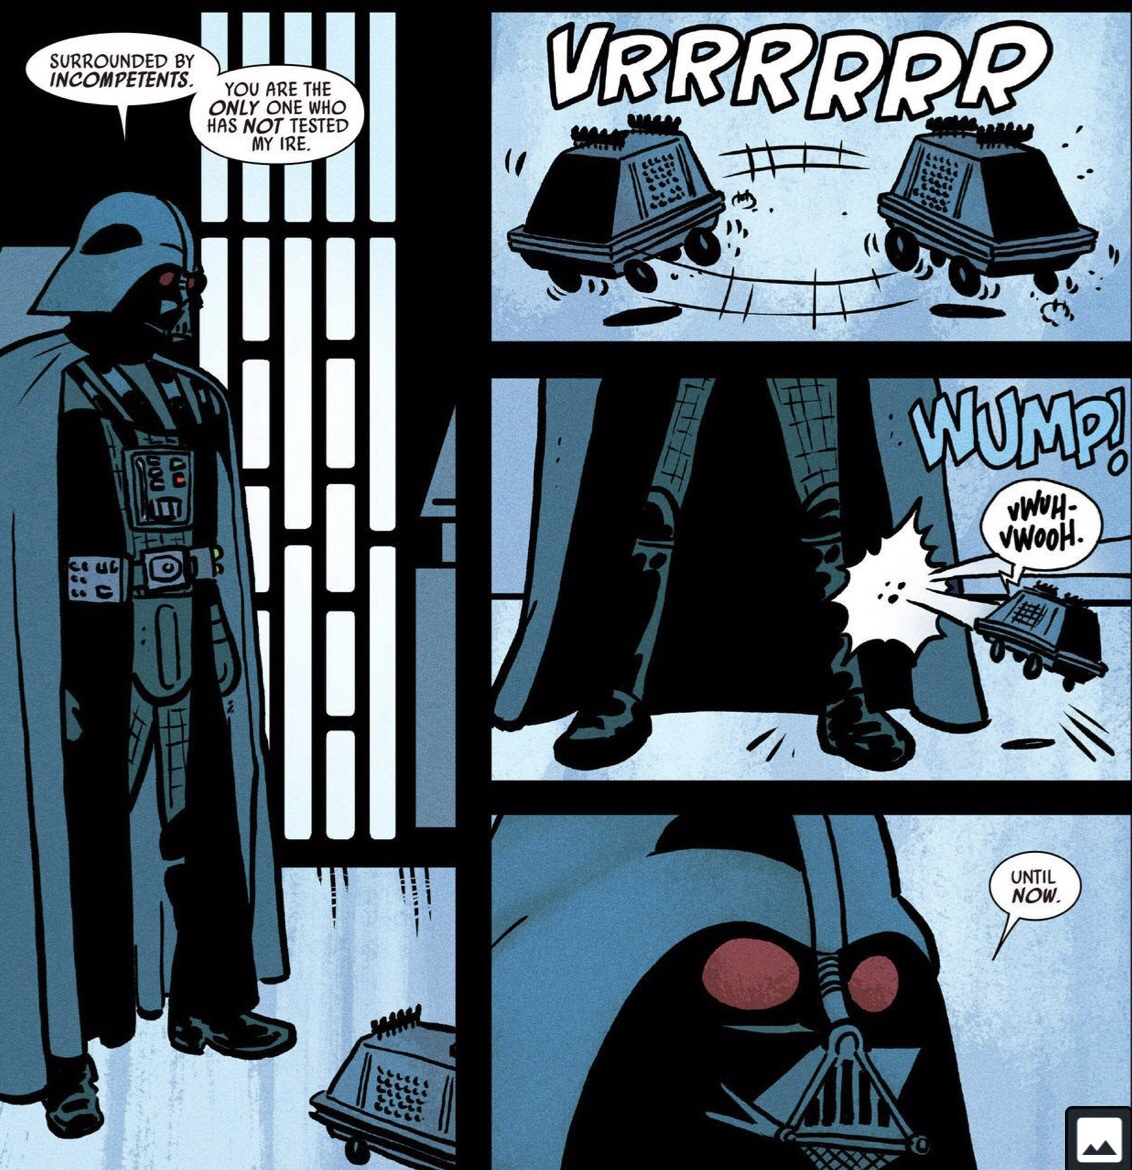 Darth Vader summed up - Imgur